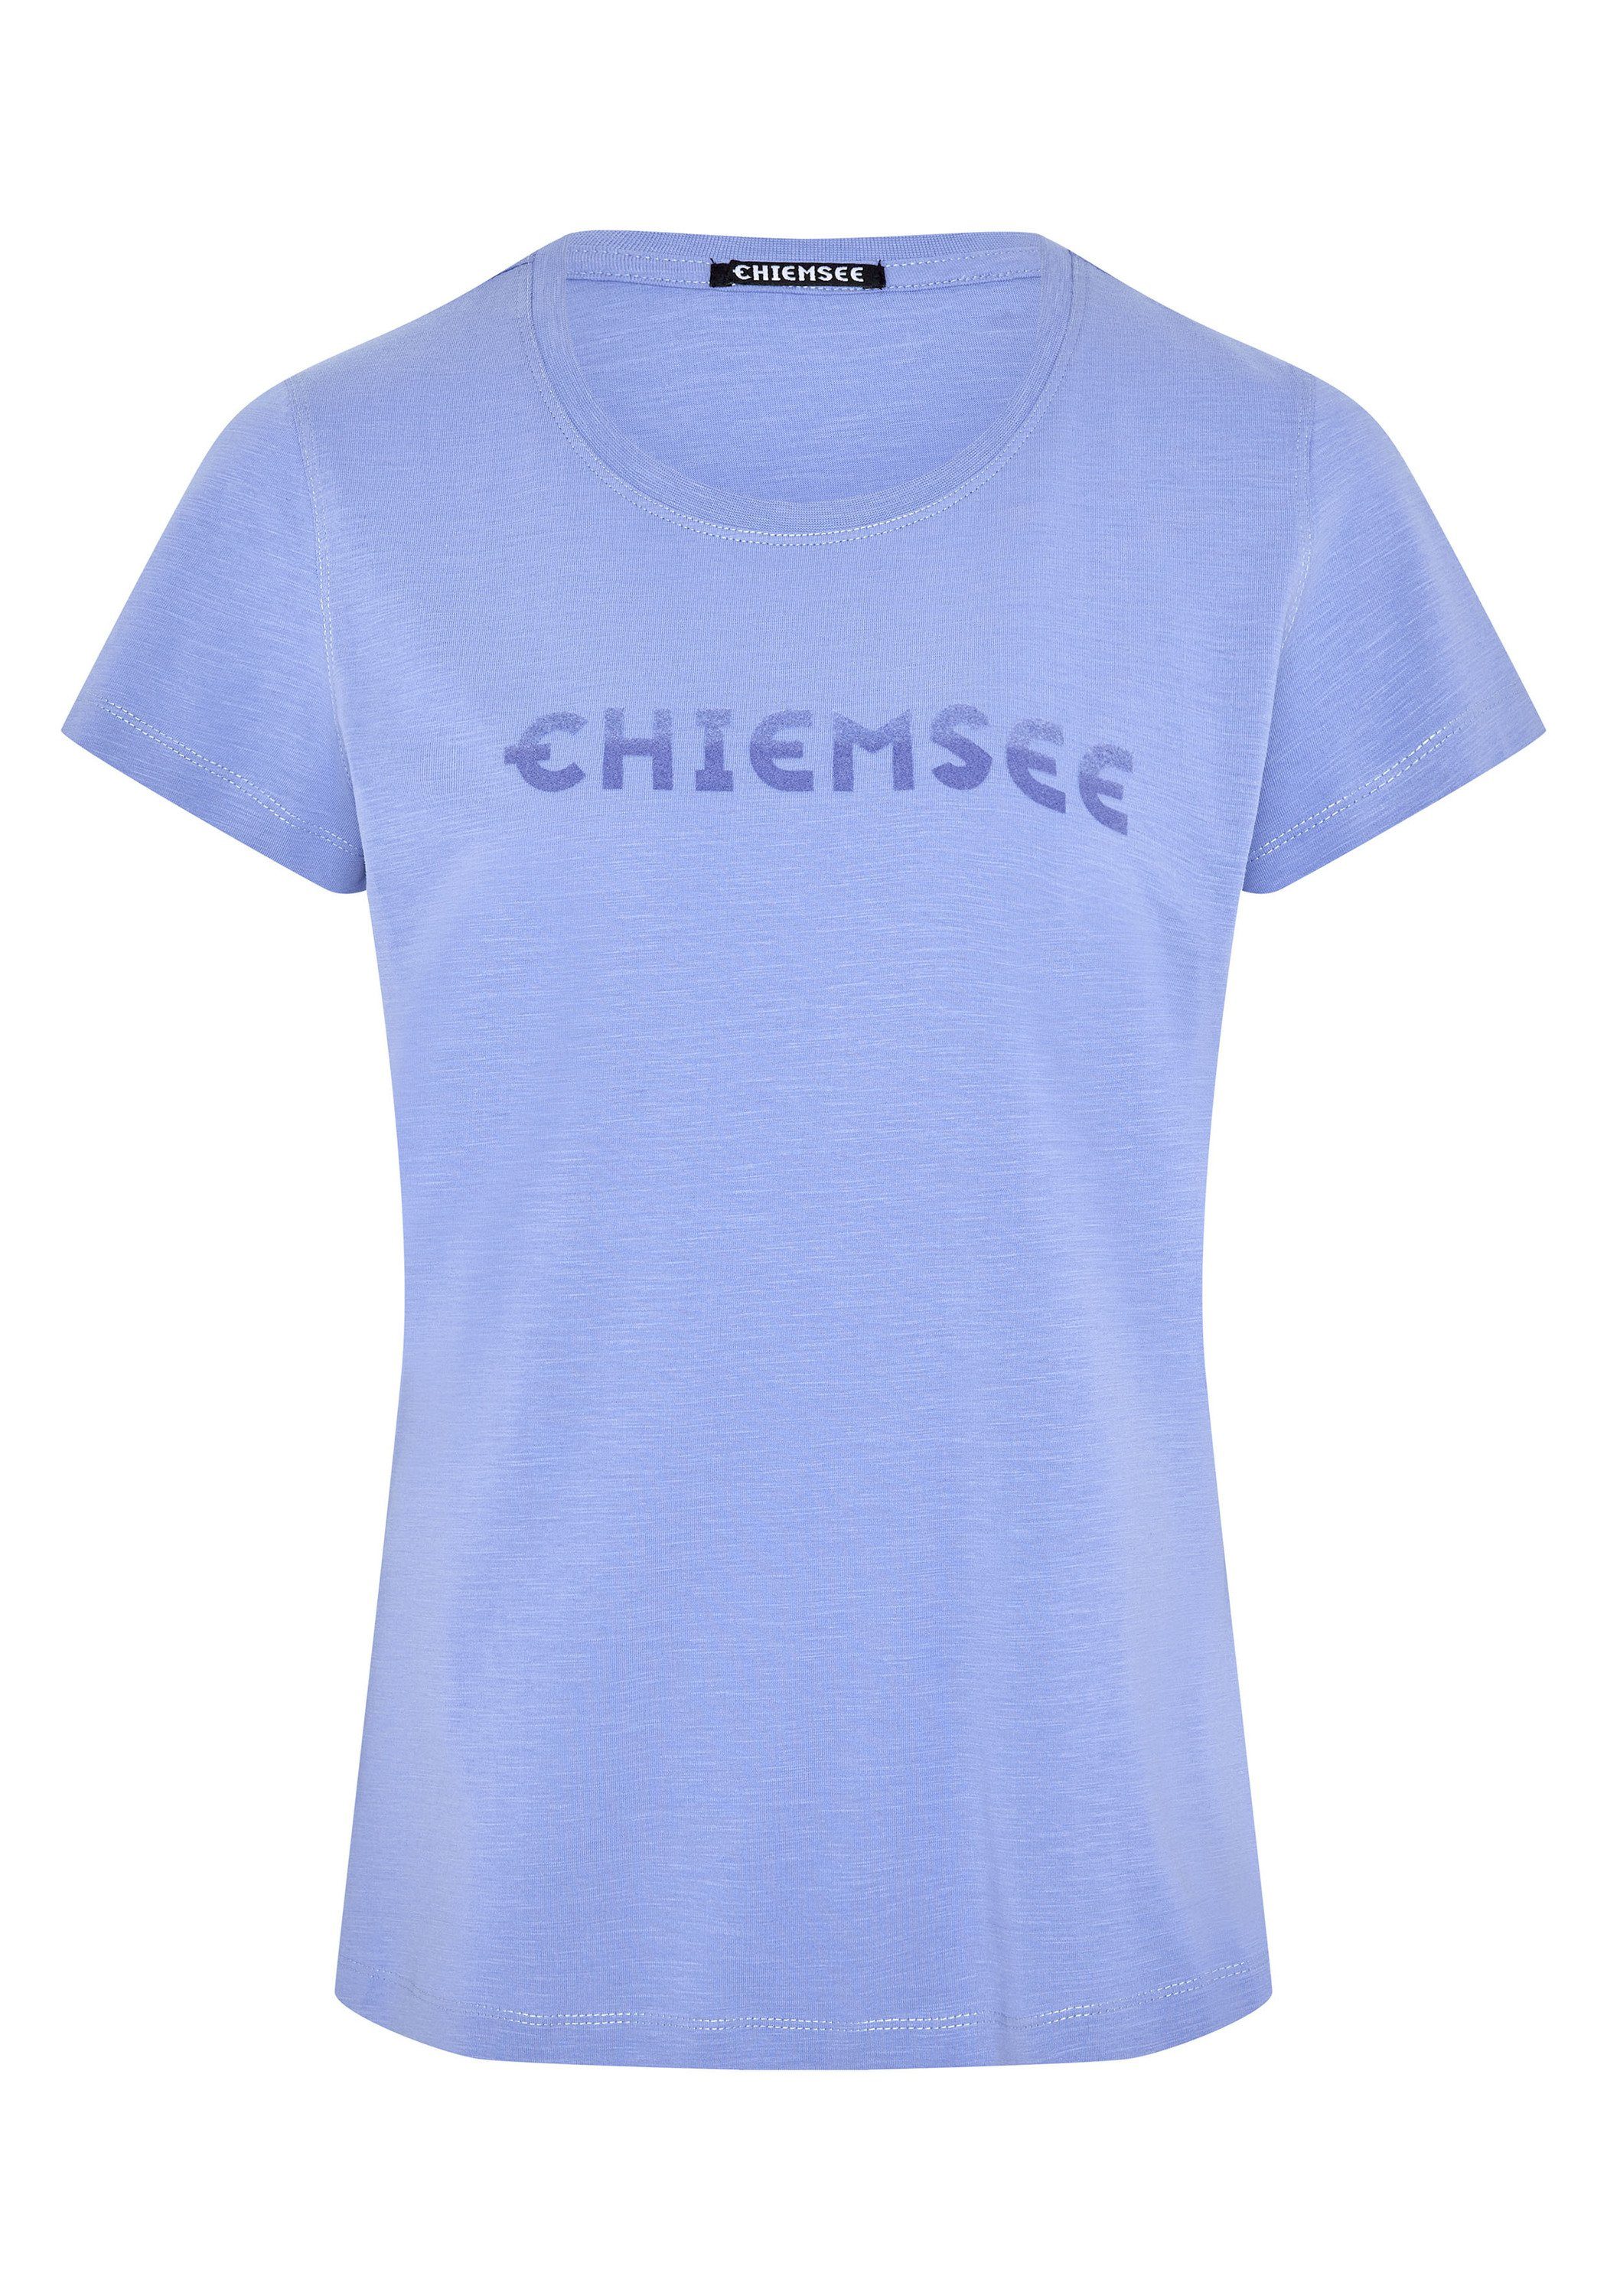 Chiemsee Print-Shirt T-Shirt mit Logo in Farbverlauf-Optik 1 Jacaranda